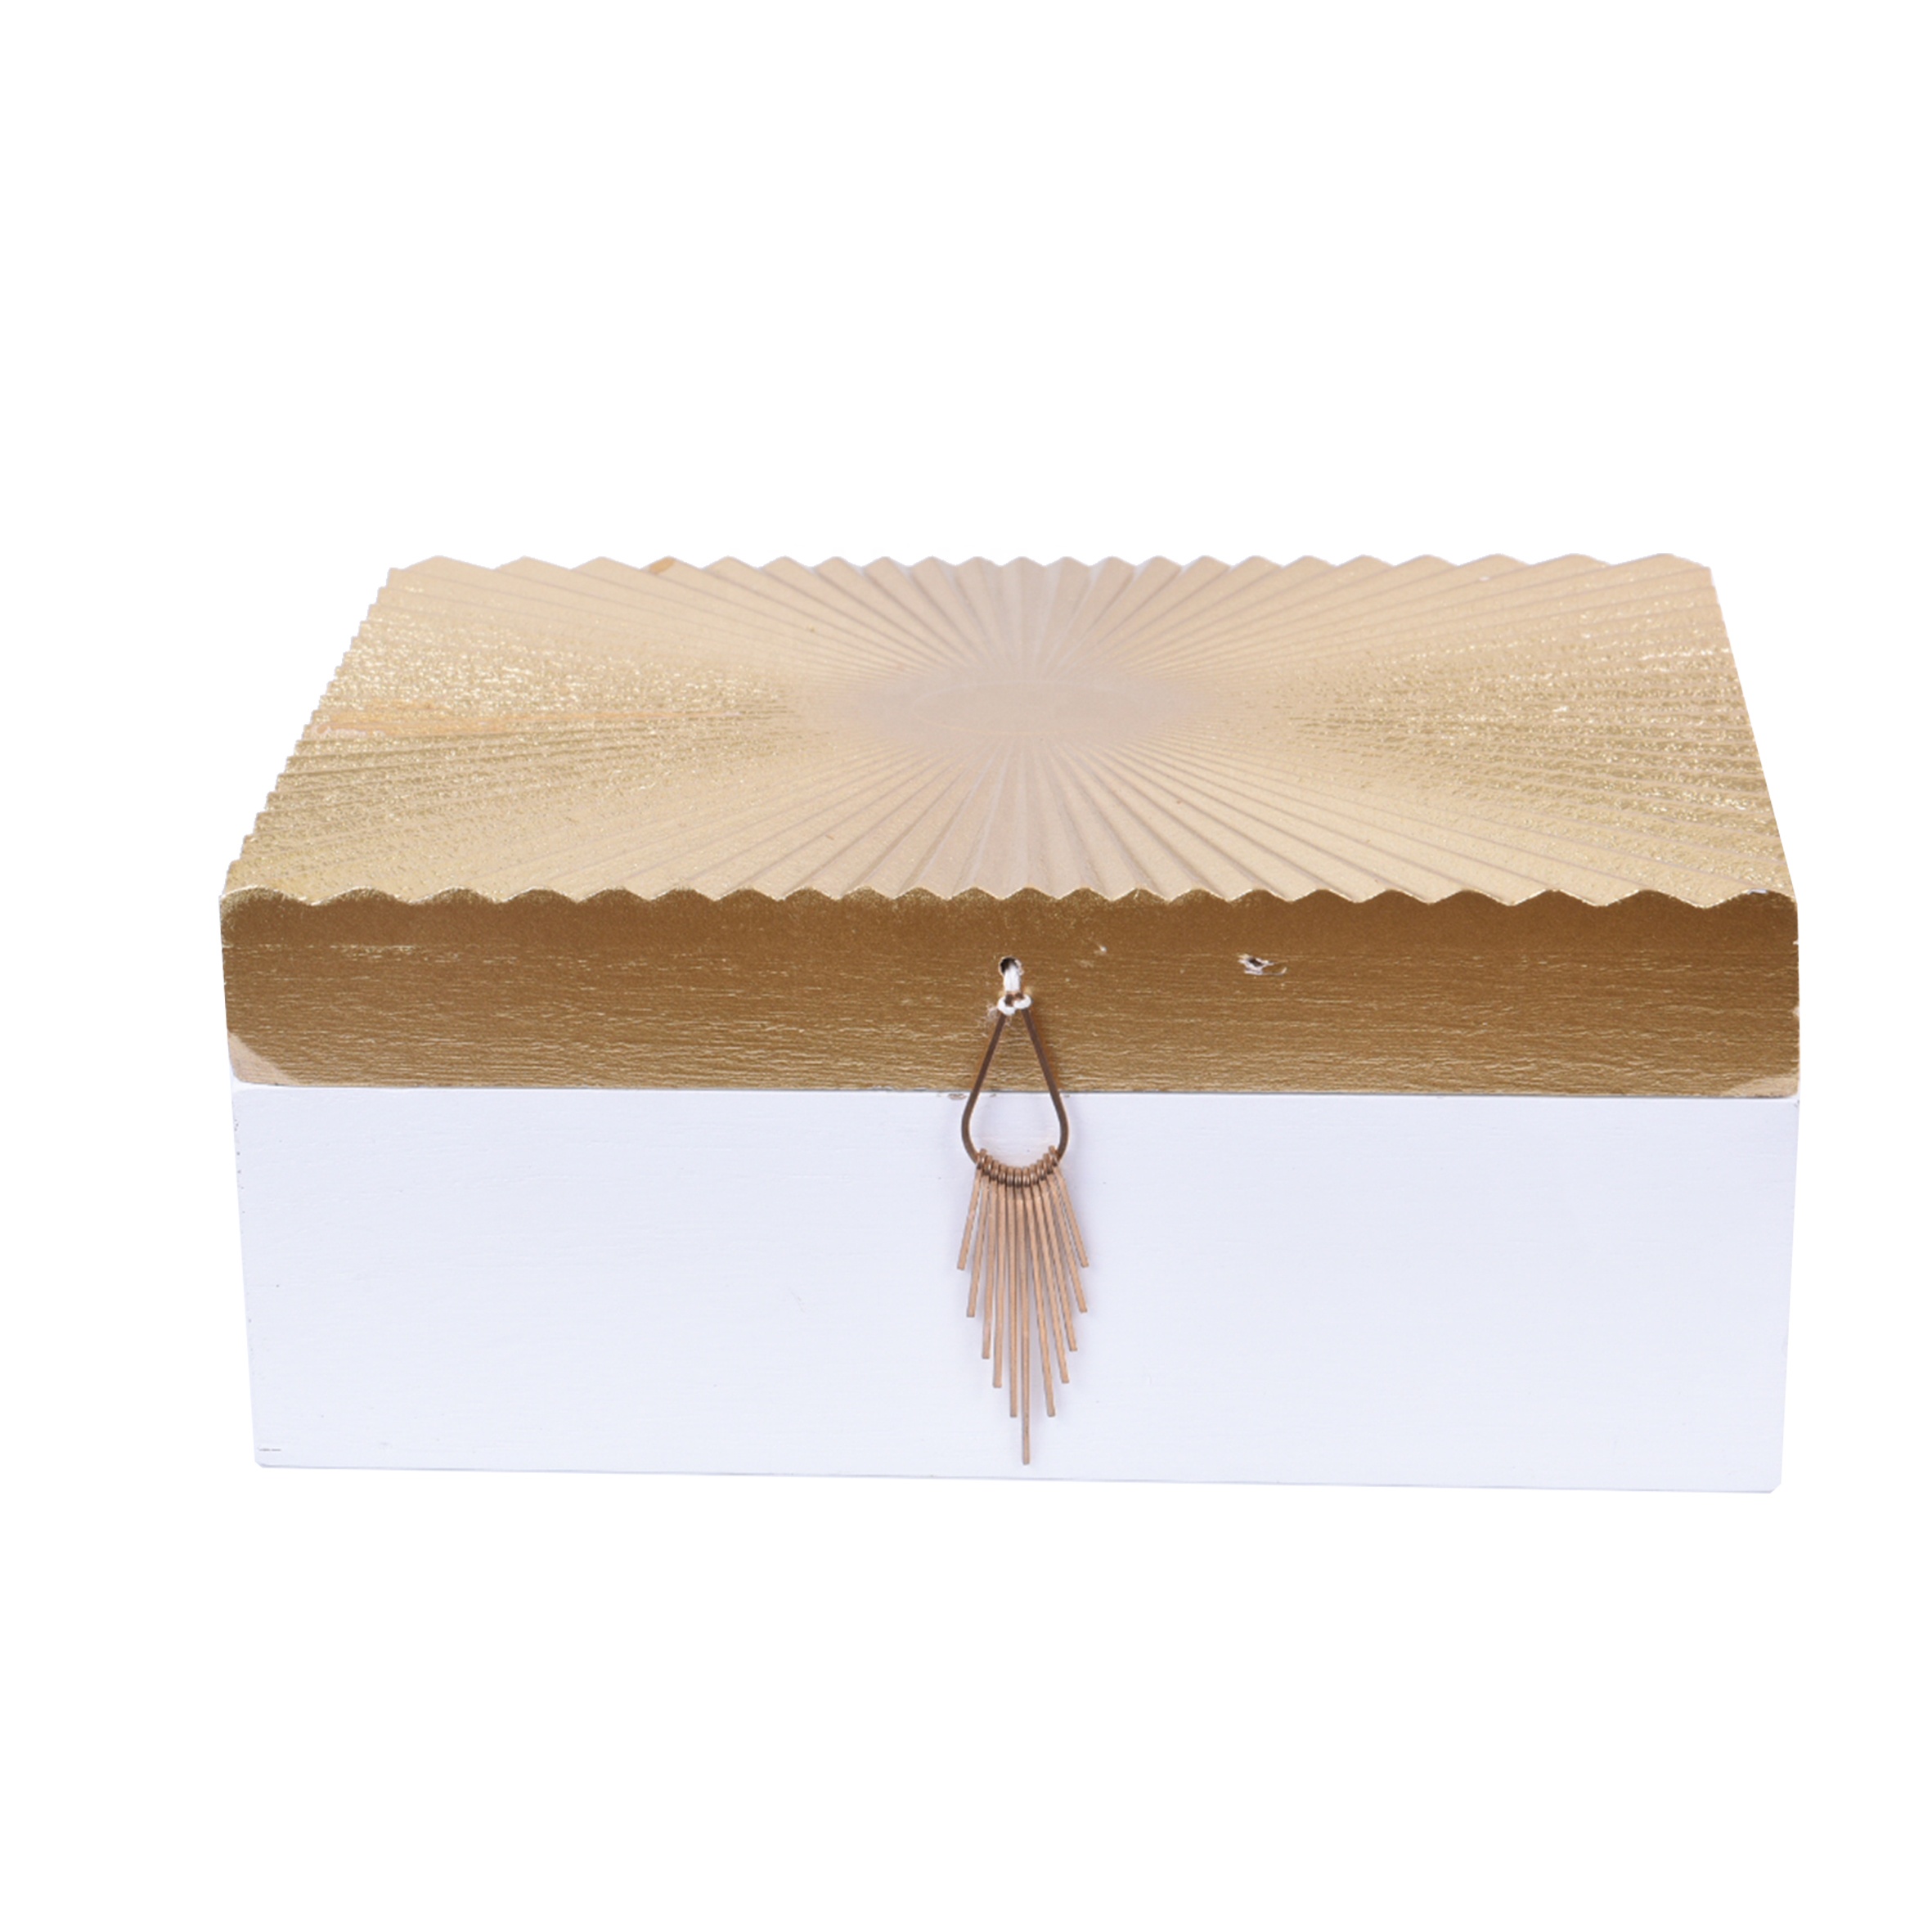 Golden Luxury wooden storage box